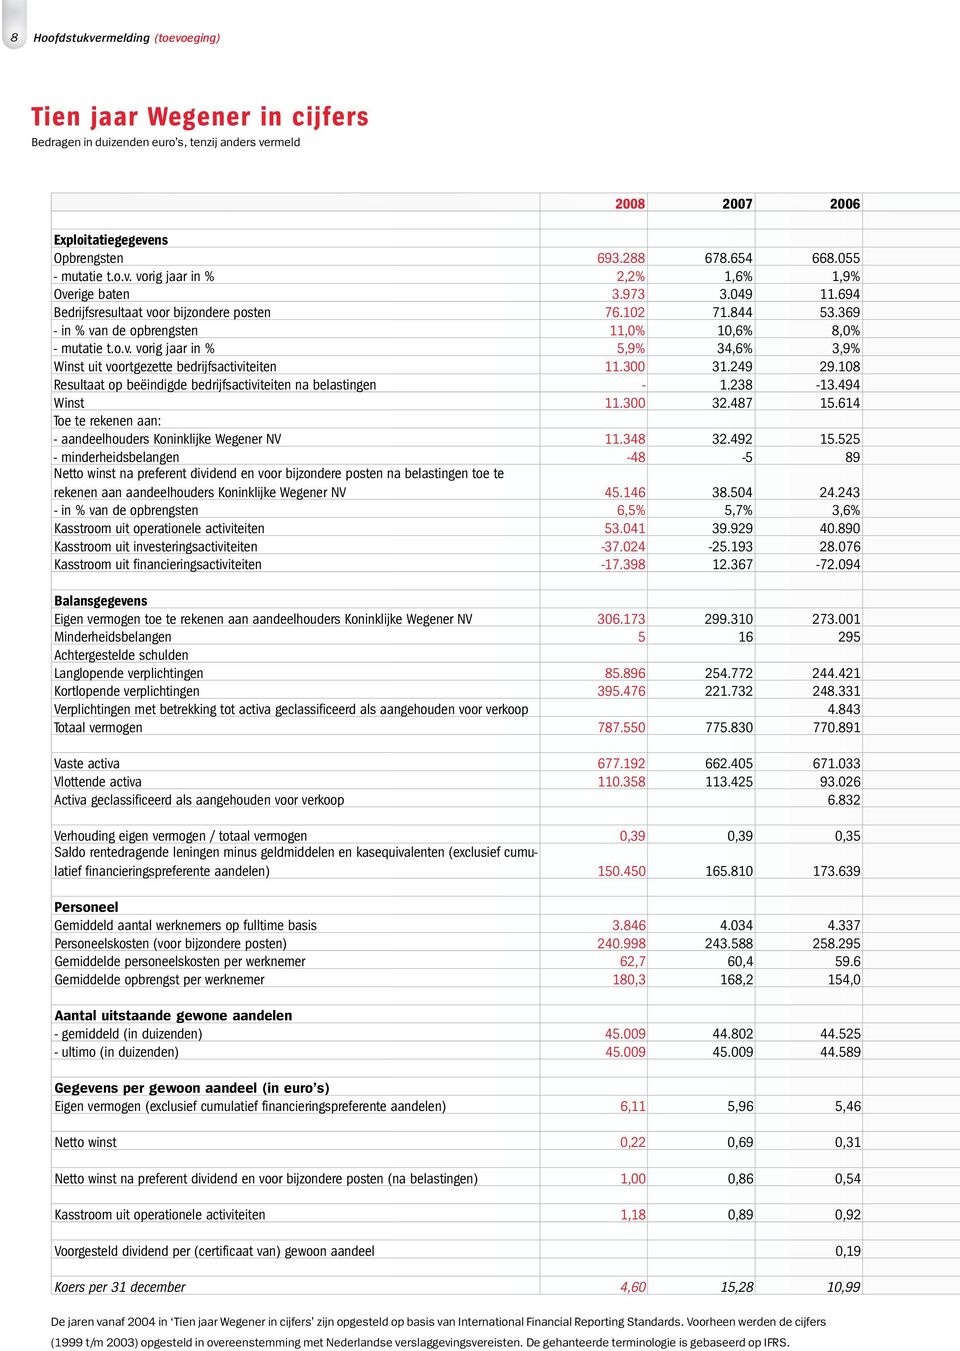 300 31.249 29.108 Resultaat op beëindigde bedrijfsactiviteiten na belastingen - 1.238-13.494 Winst 11.300 32.487 15.614 Toe te rekenen aan: - aandeelhouders Koninklijke Wegener NV 11.348 32.492 15.